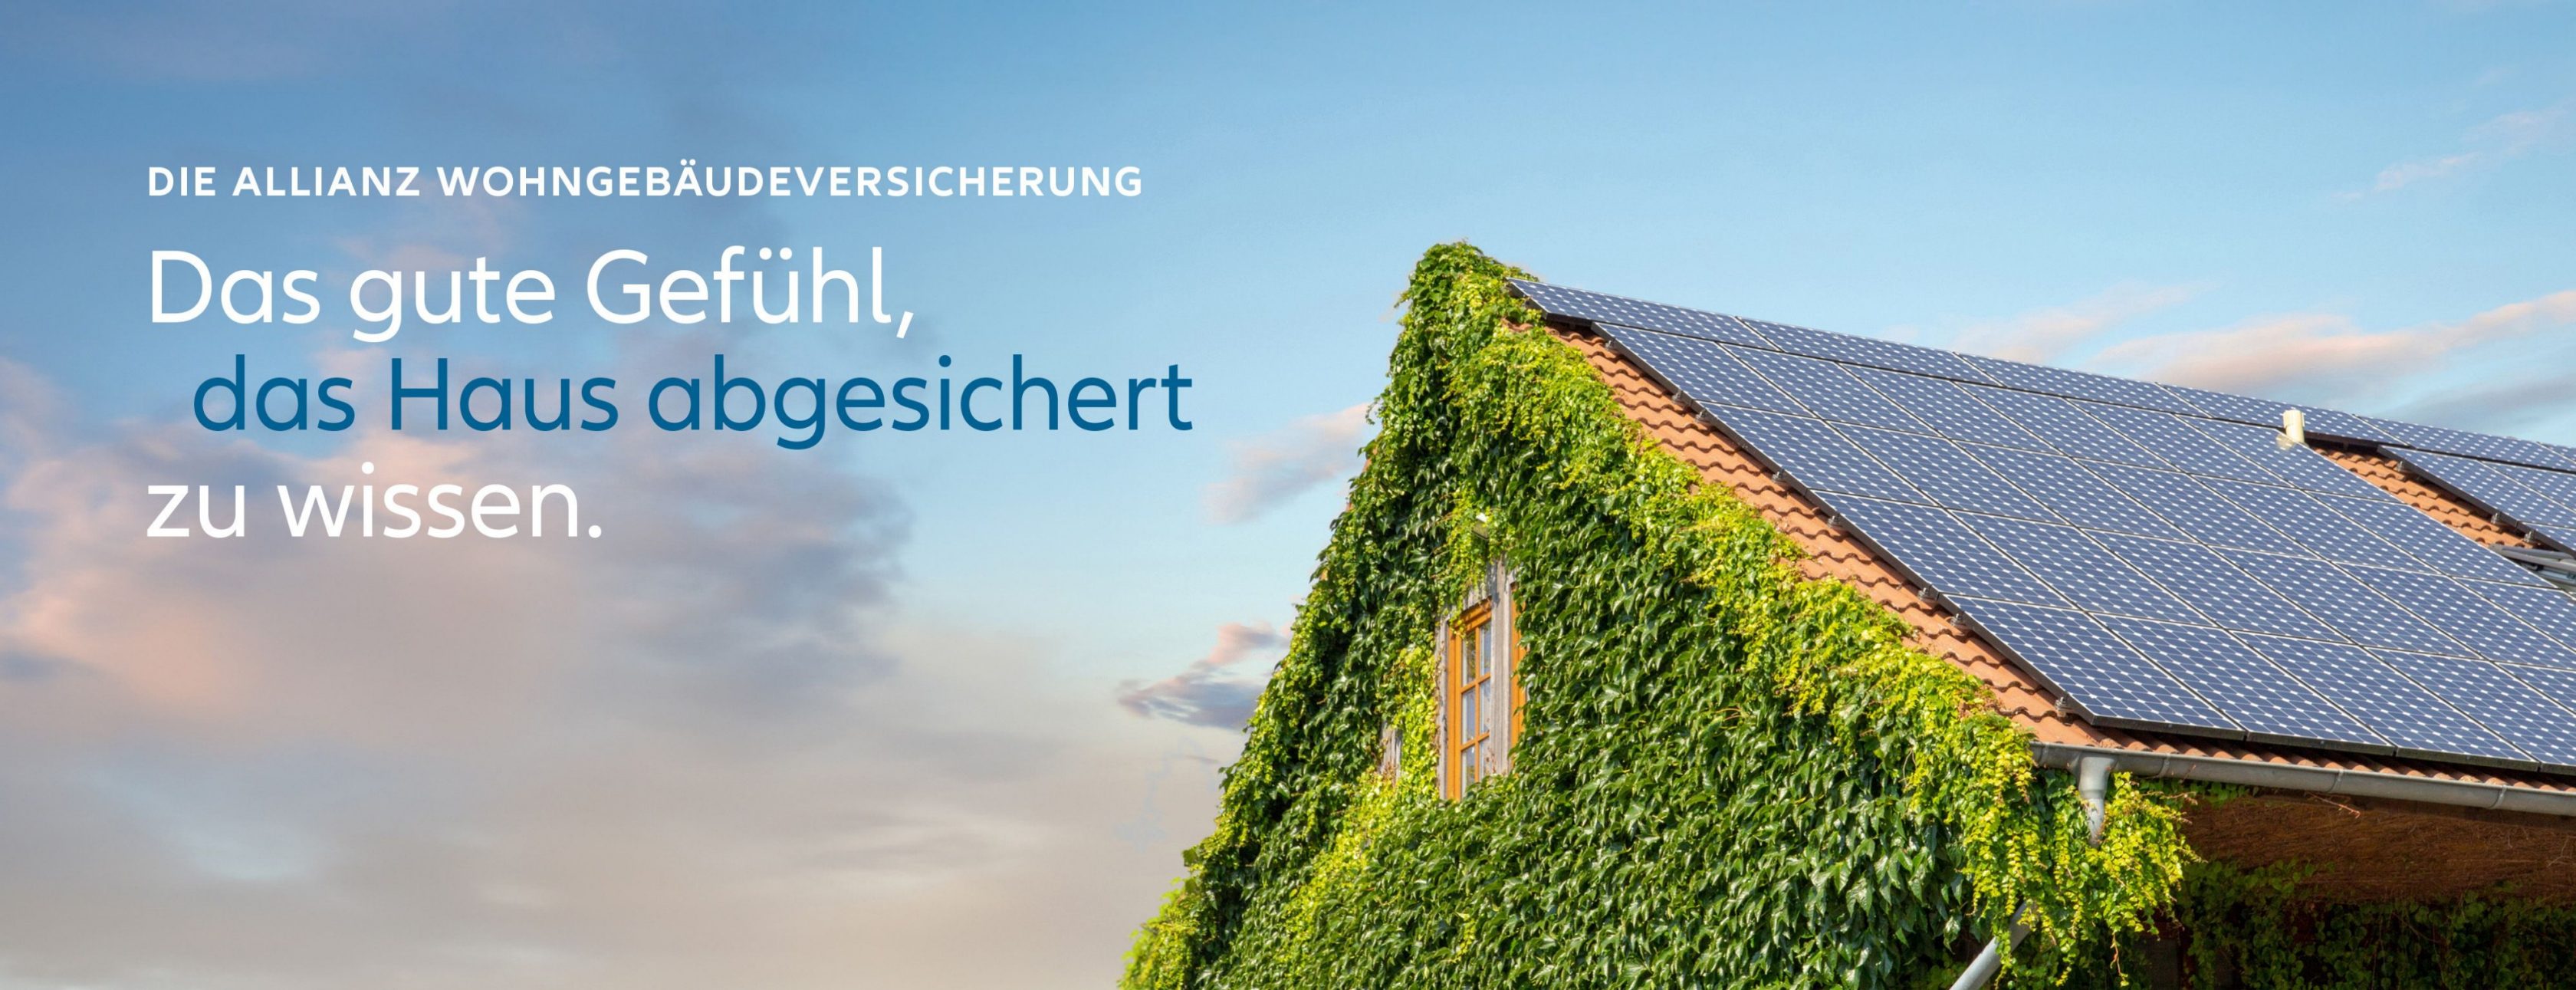 Allianz Versicherung Harald Stahl Köln - Erneuerbare Energien, Gebäude, Solar, Harald Stahl